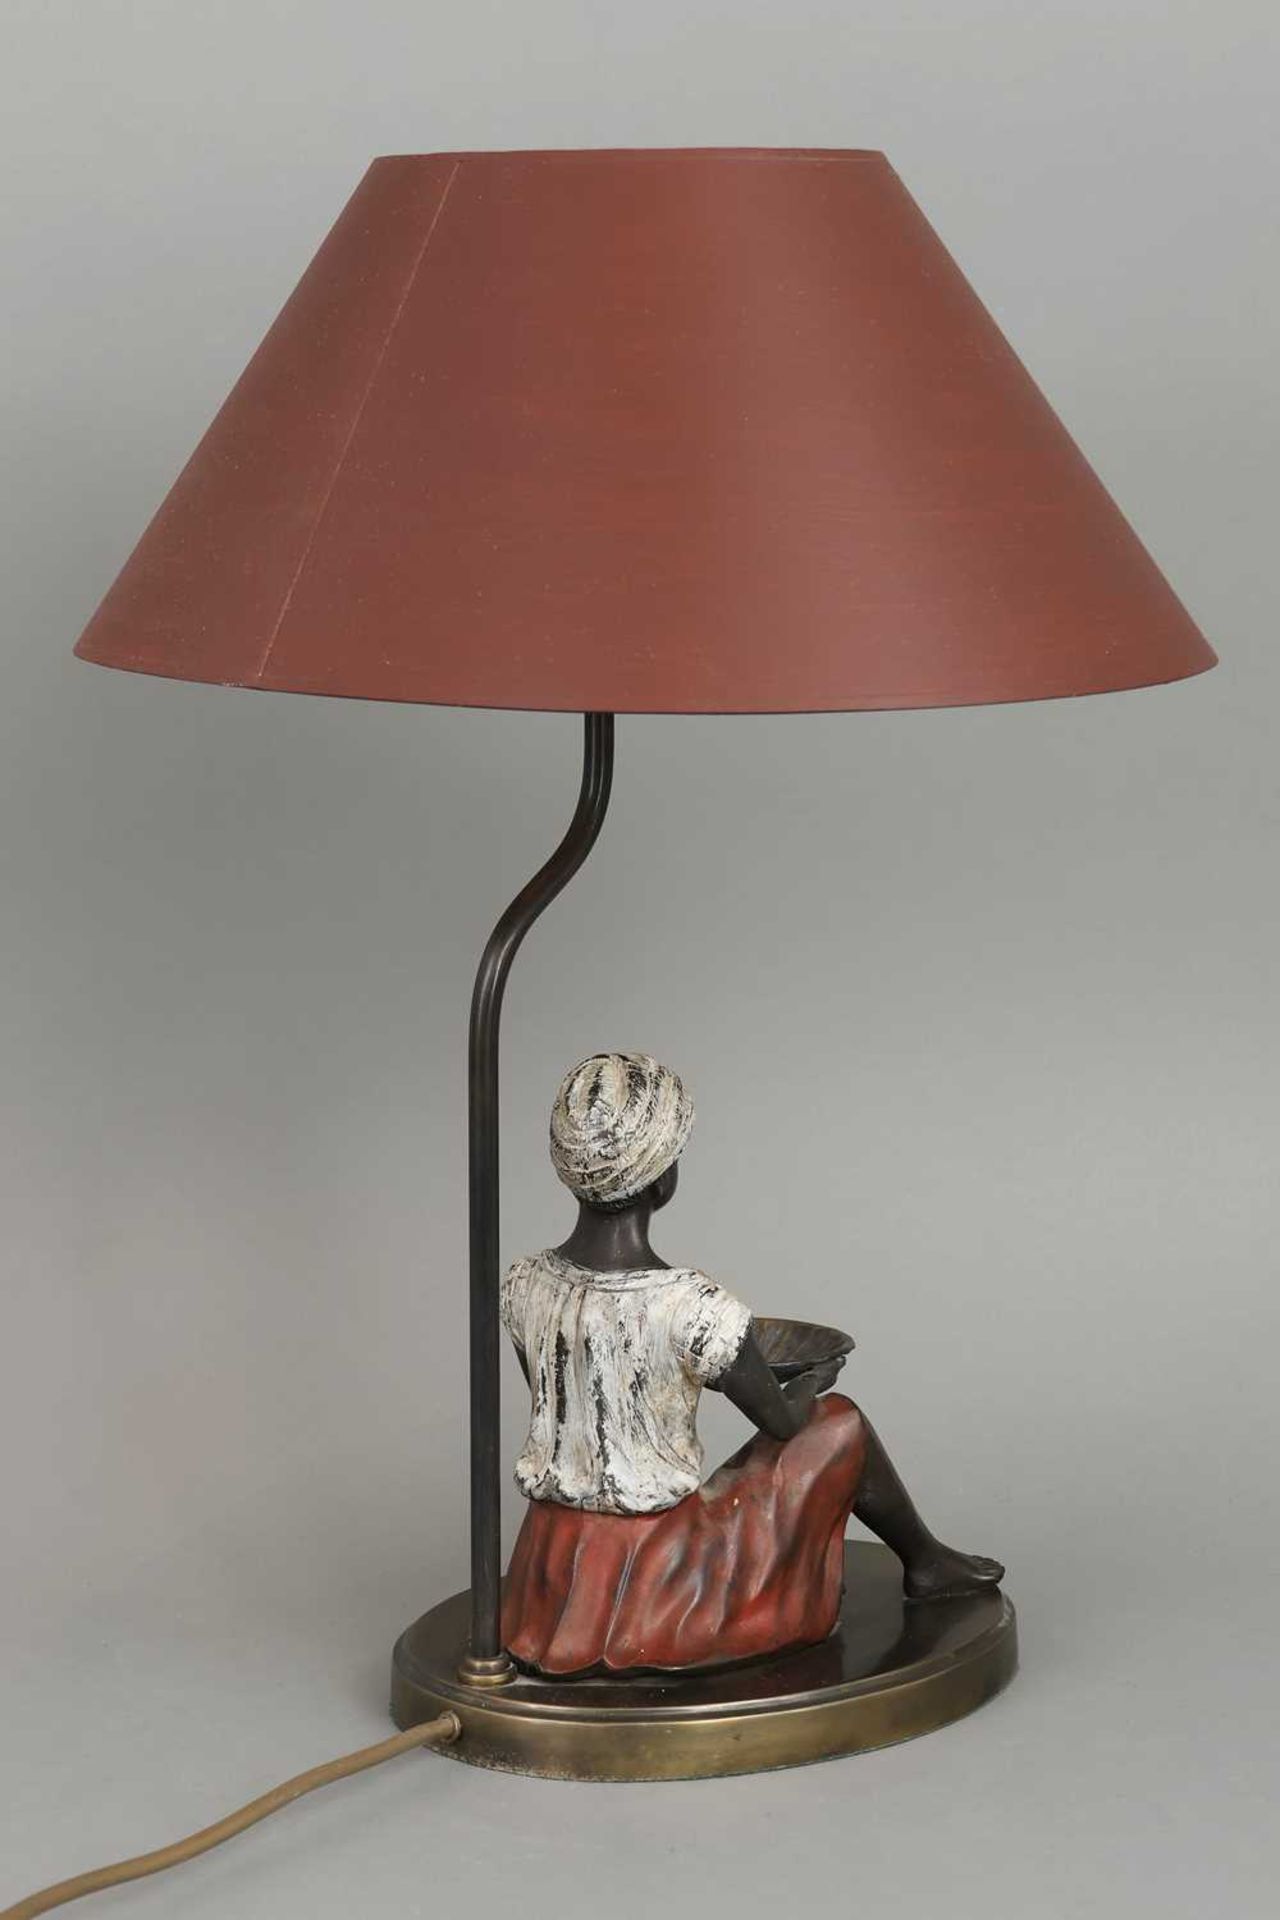 Tischlampe mit Figur eins afrikanischen Lakaien mit Muschelschale - Bild 2 aus 3